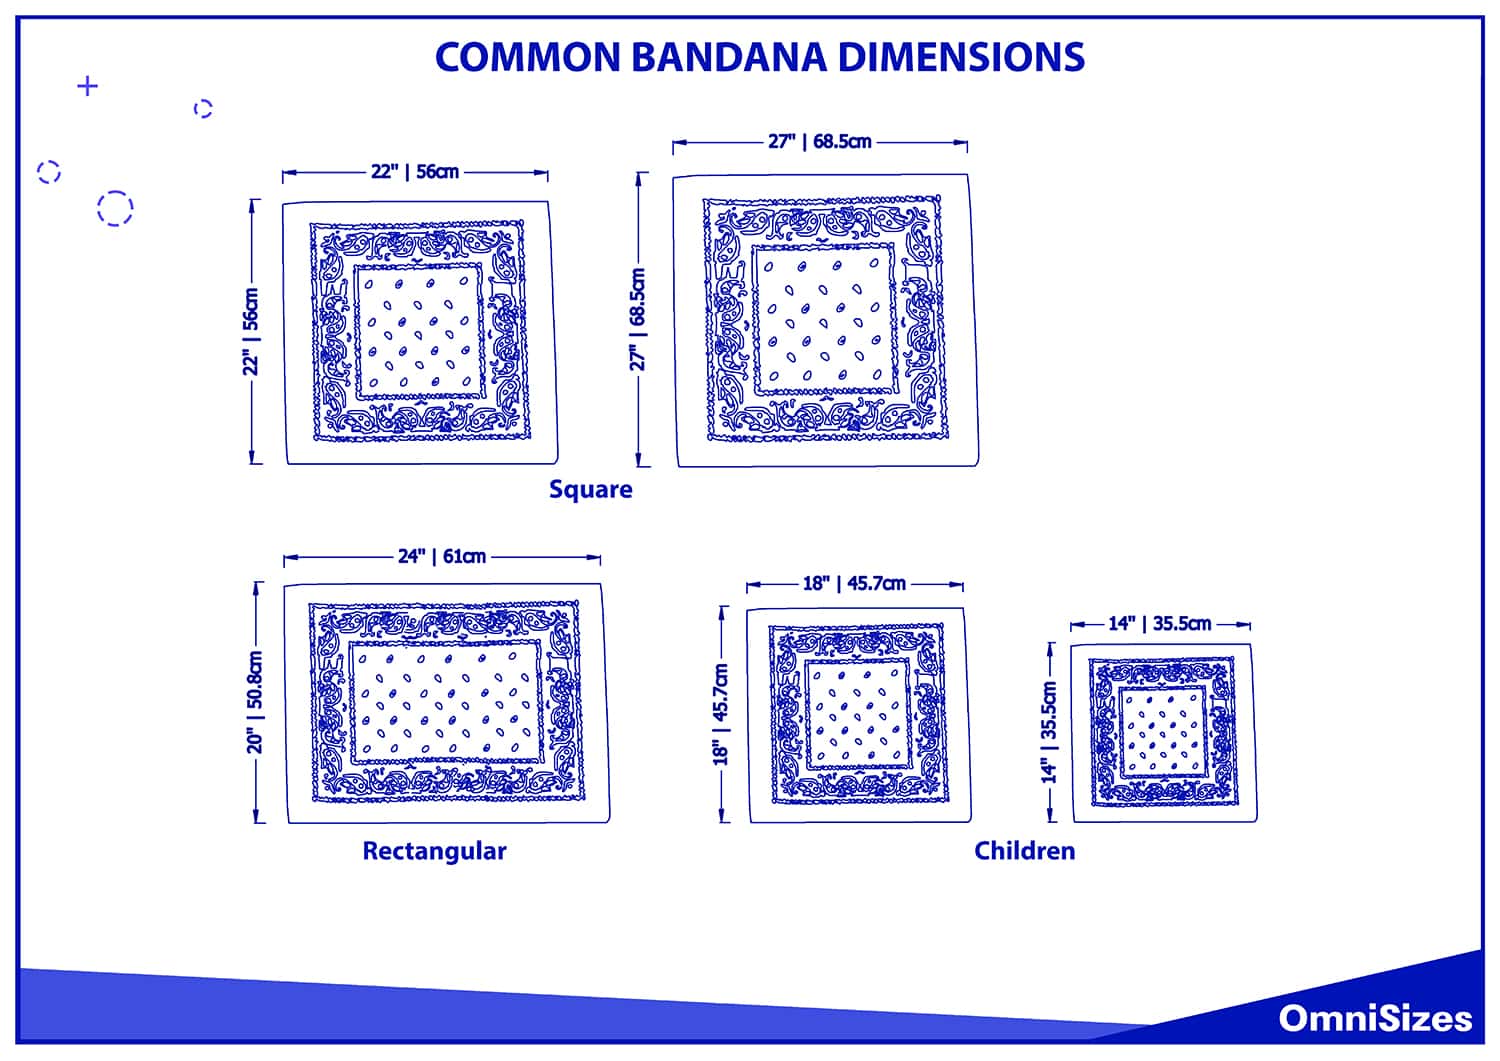 Common bandana dimensions